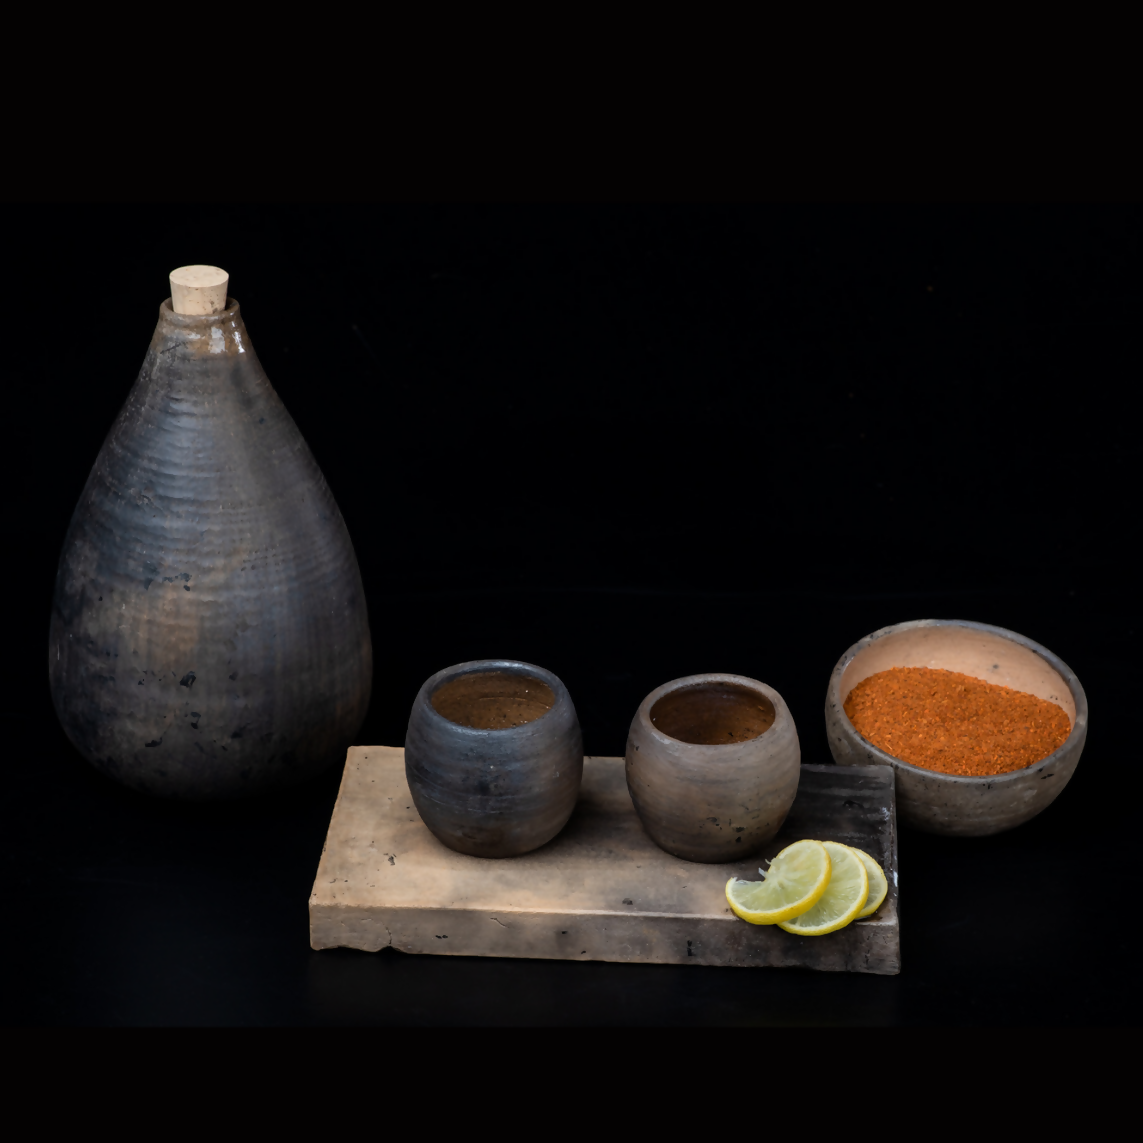 Handmade Clay “Barrel” Shot Glass